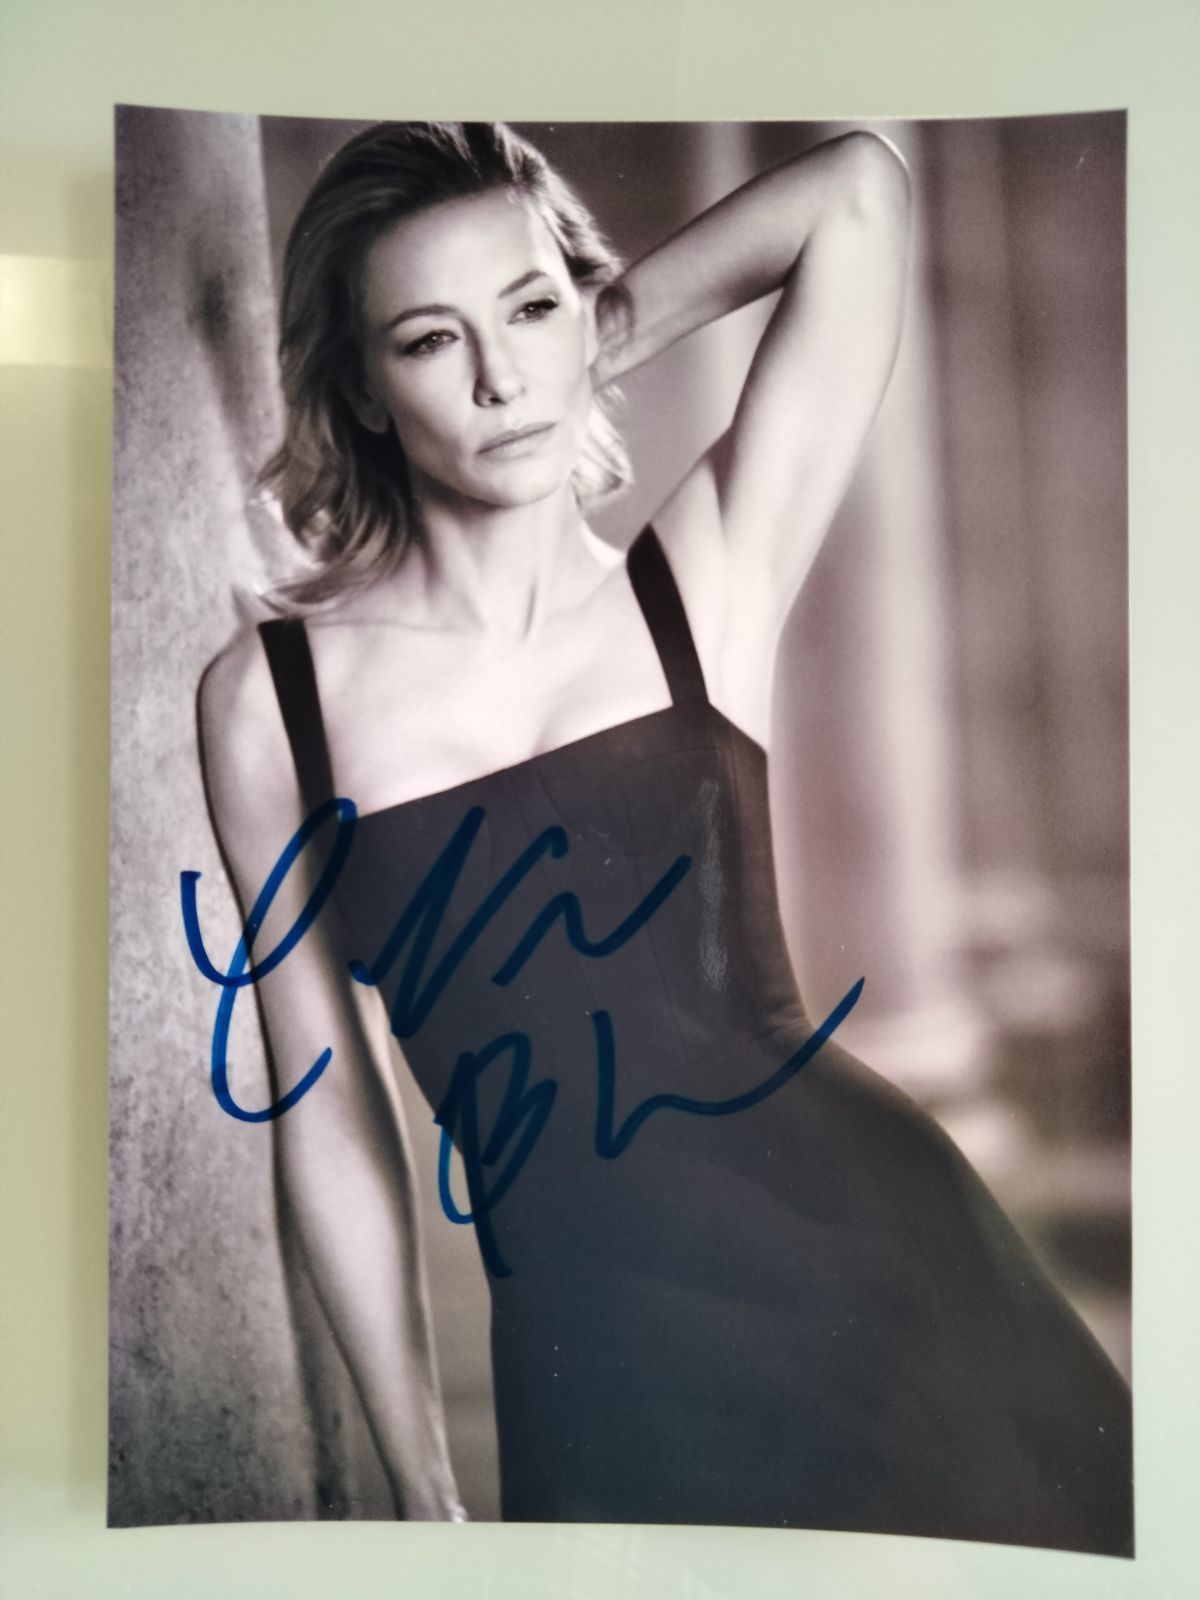 ケイト・ブランシェット直筆サイン入り2Lサイズ写真…Cate Blanchett